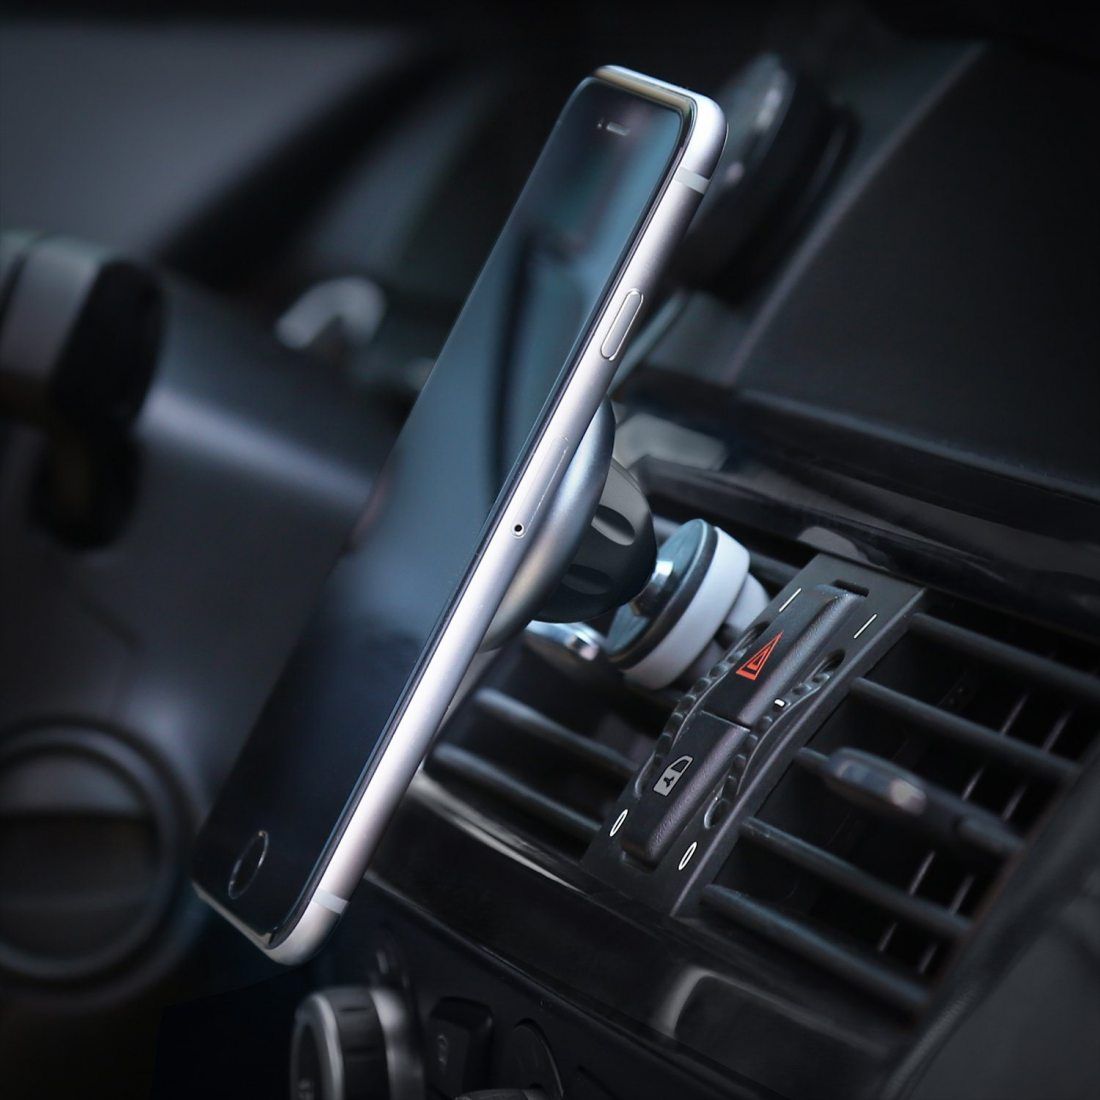 Aukey HD-C12 Support de Smartphone pour voiture pour iPhone 6/6S/Samsung Galaxy/Nexus/etc. Gris Sidéral